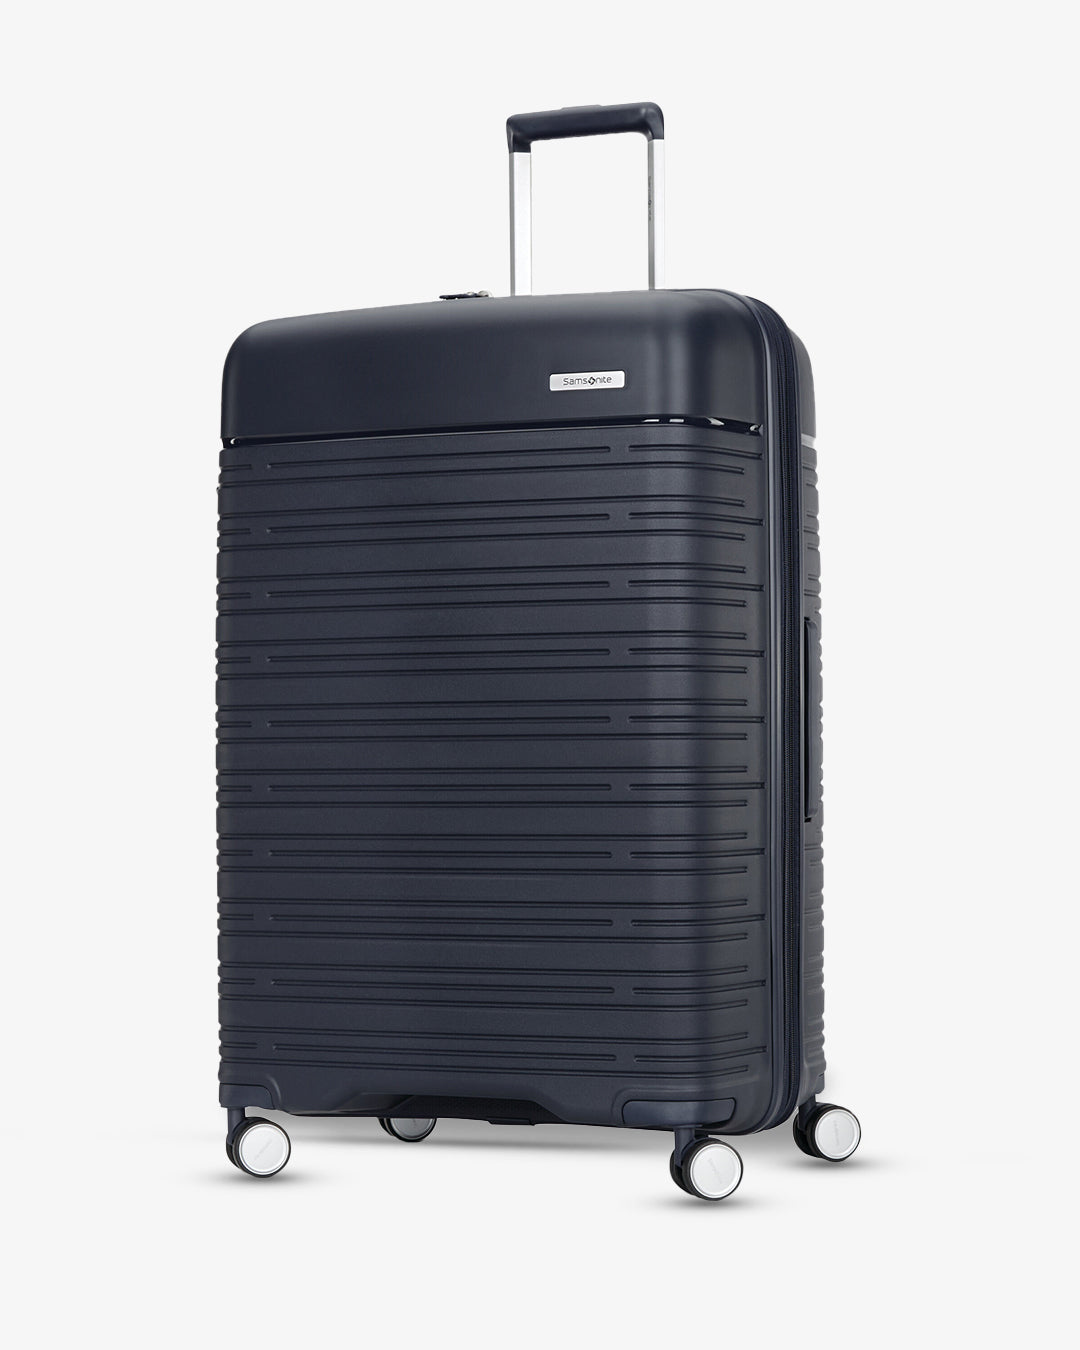 Samsonite Elevation Plus Luggage (LARGE)